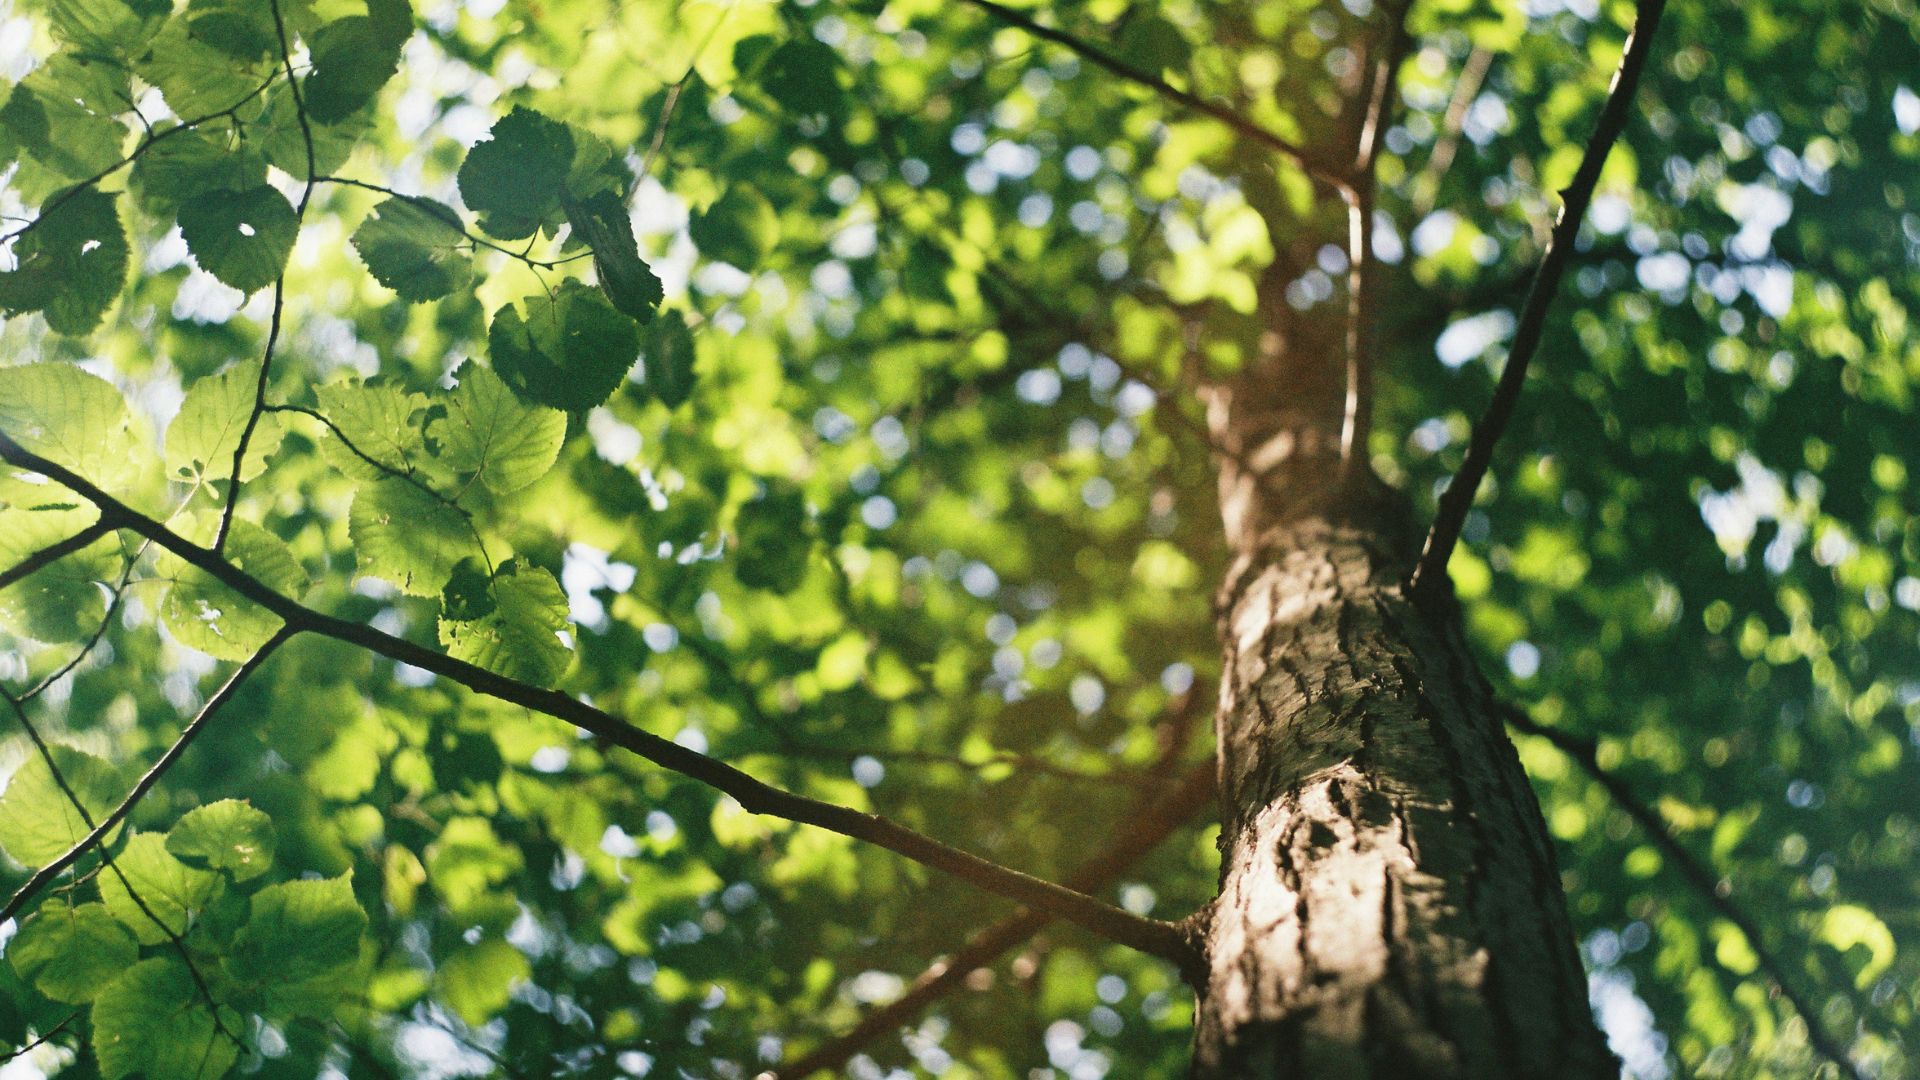 Cambio Climático: Plantando árboles para eliminar CO2 de la atmósfera